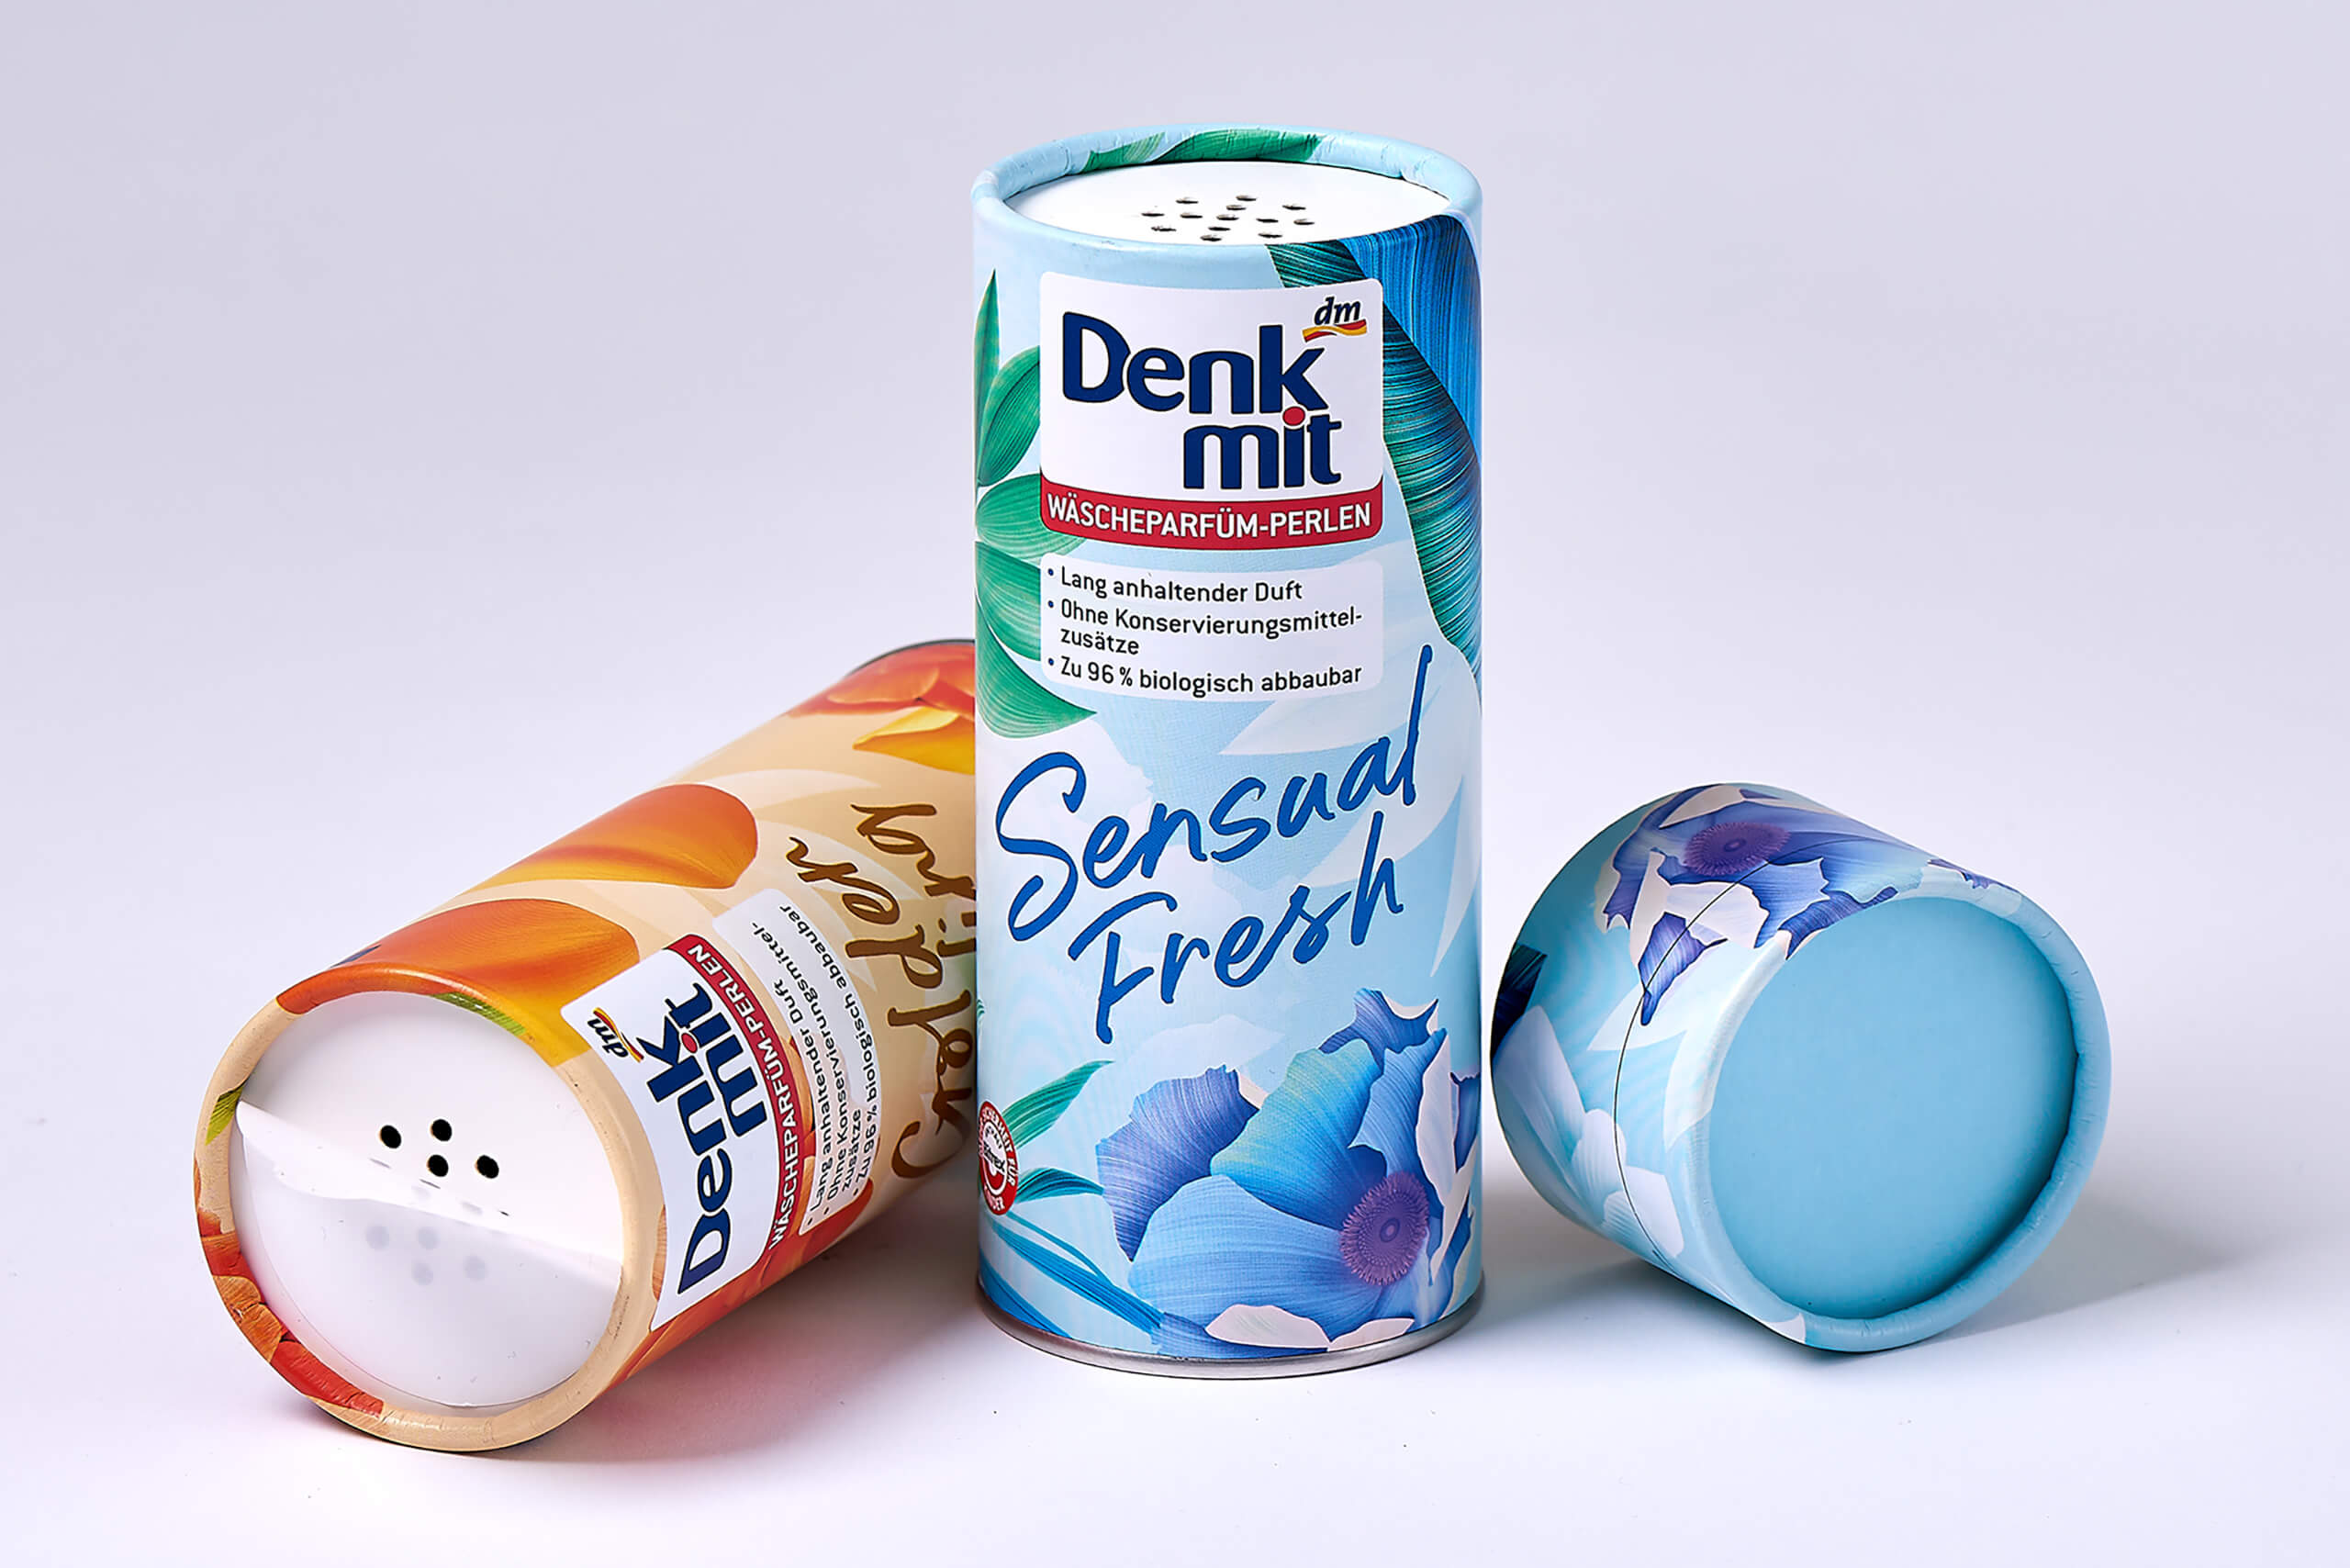 Dent Mit Shaker Tube packaging